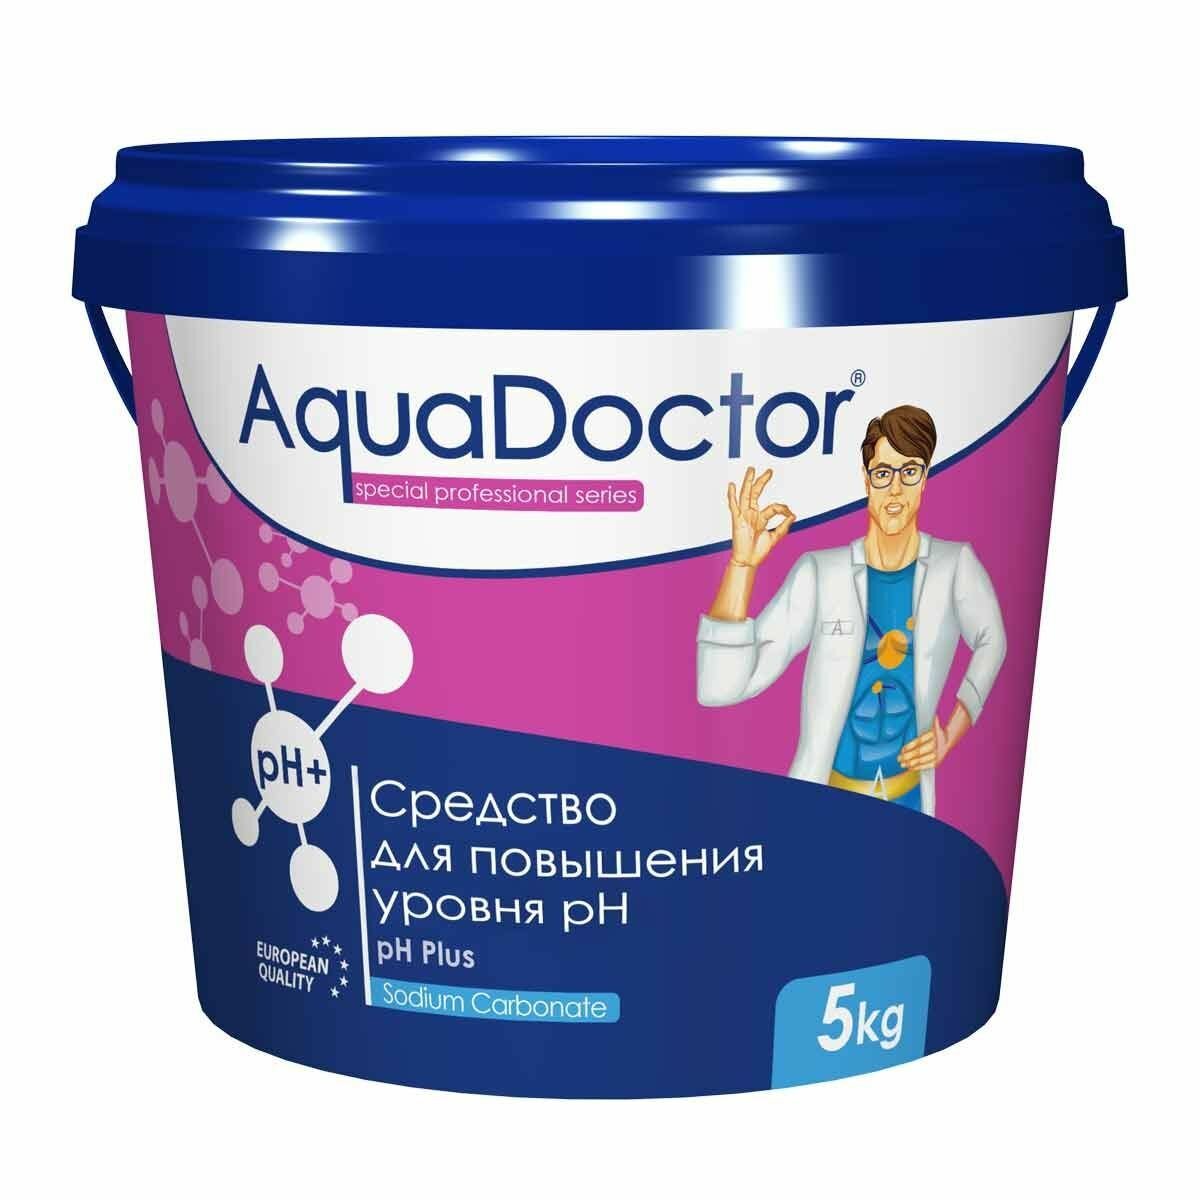 Регулирование ph воды бассейна AquaDoctor pH Plus 5 кг